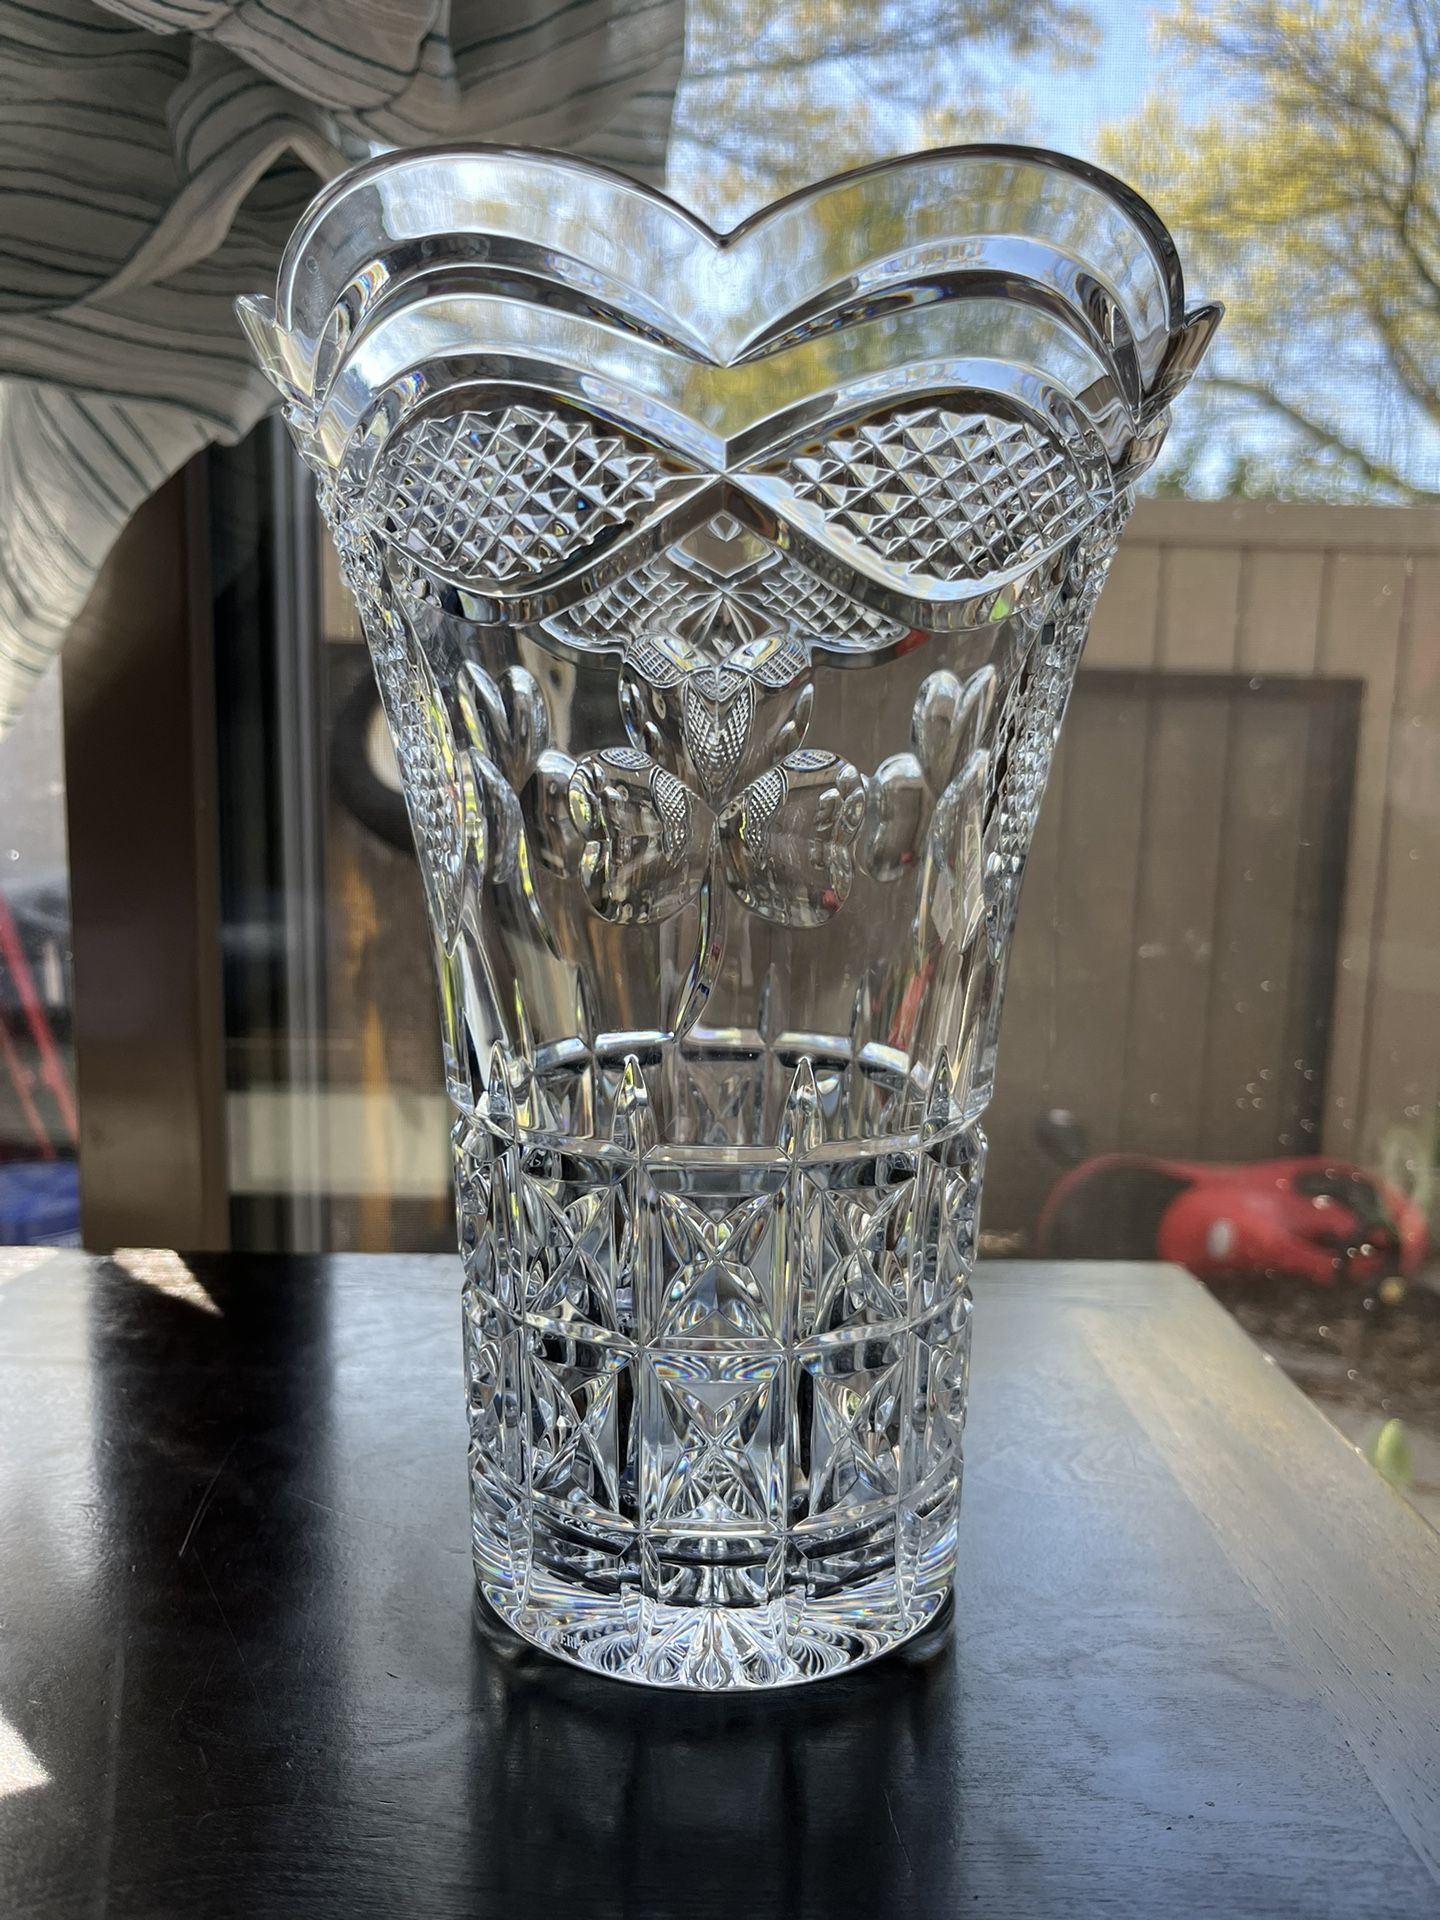 Irish Crystal Vase